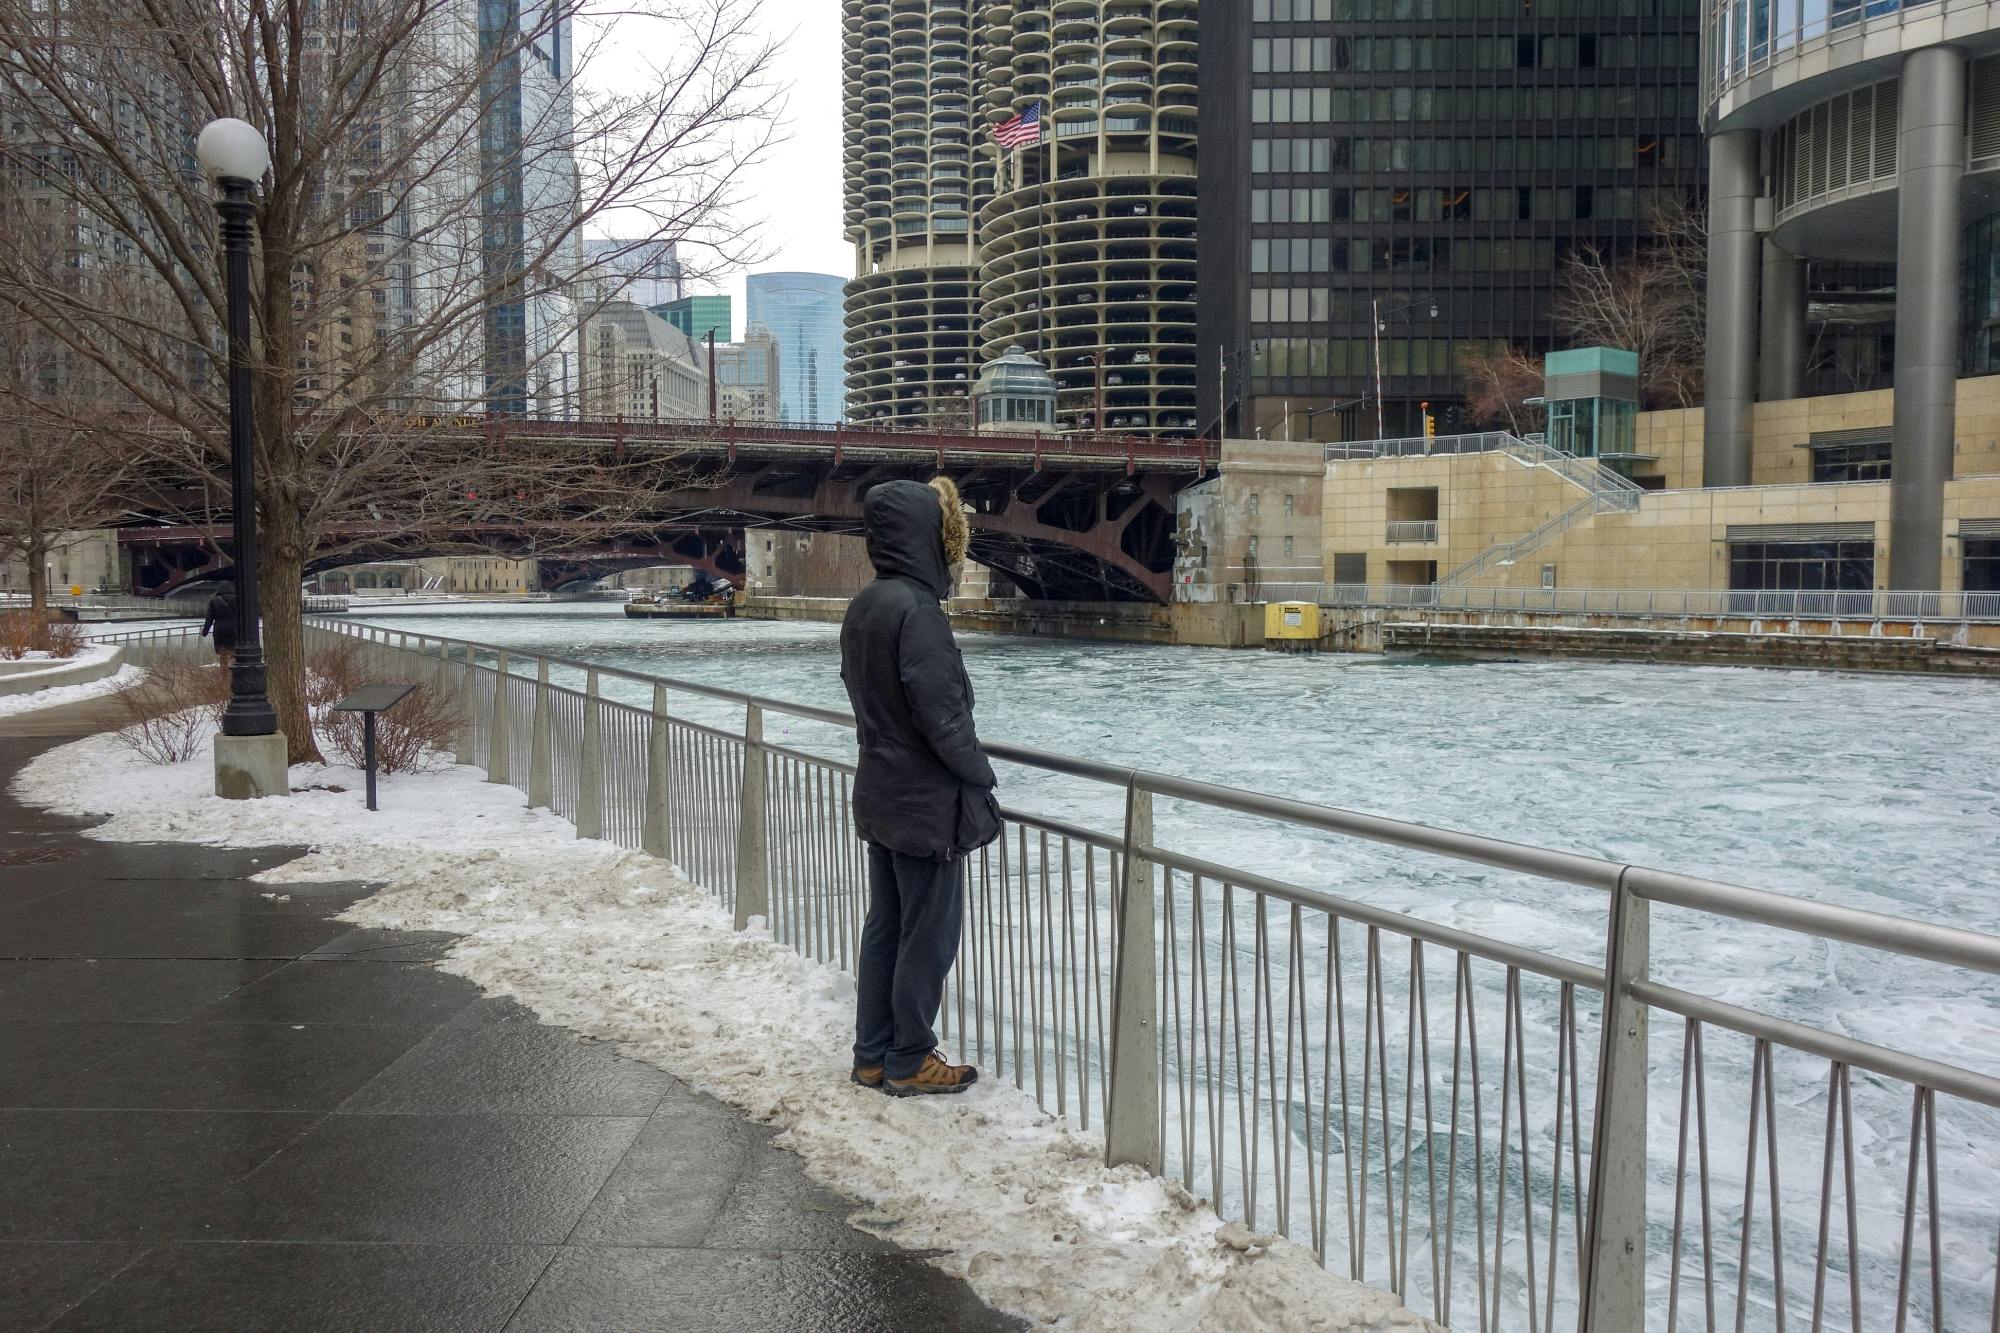 Riverwalk zelfgeleide audiowandeling door Chicago